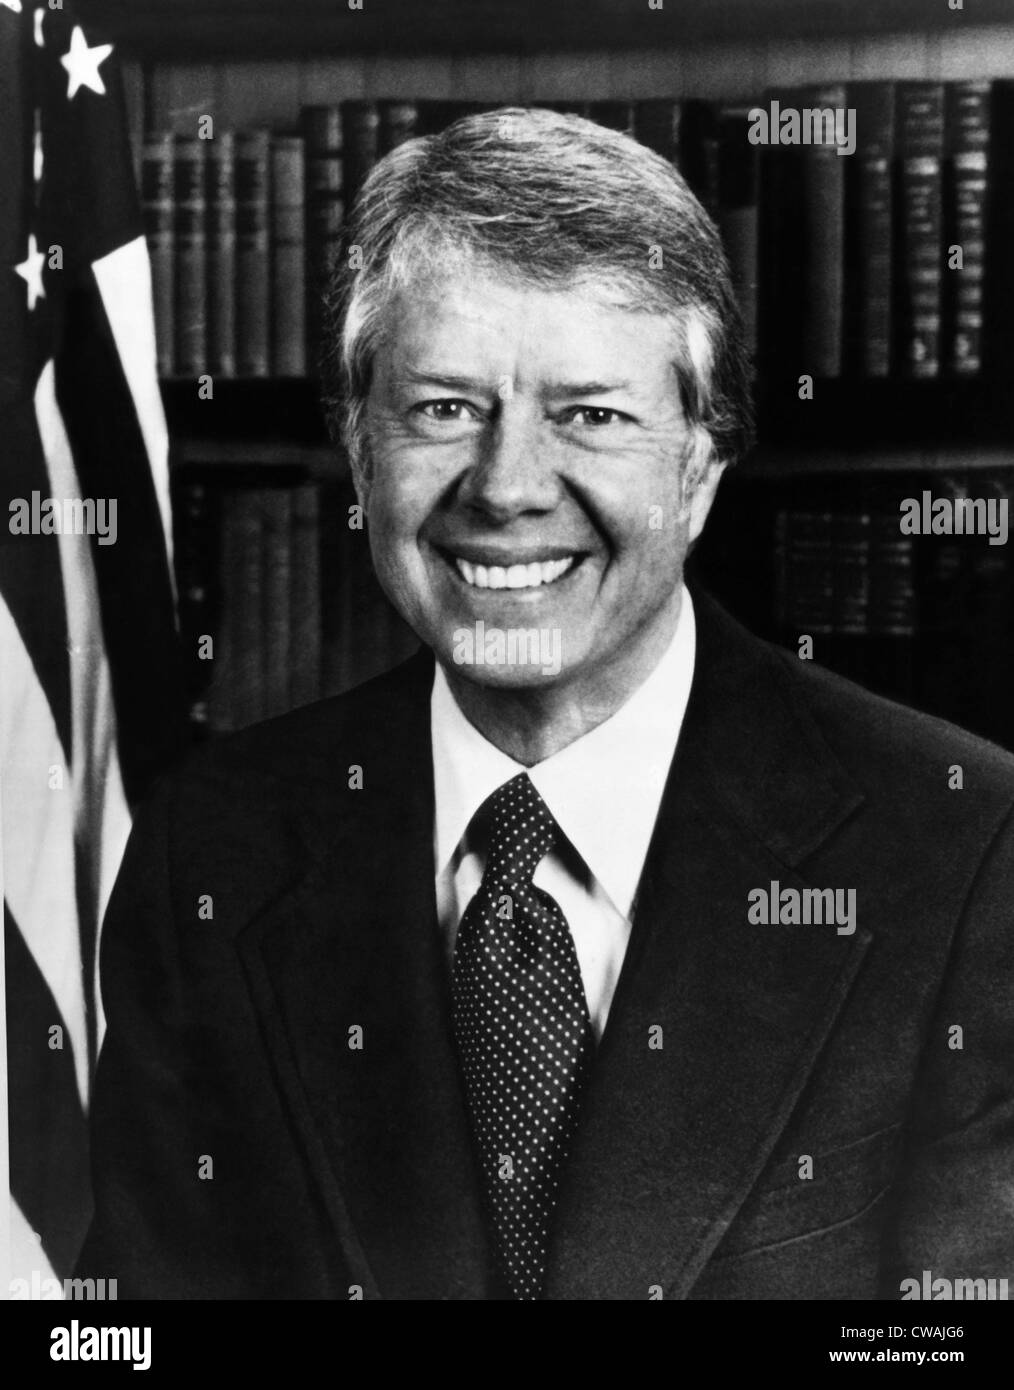 Präsident Jimmy Carter, etwa Ende der 1970er Jahre. Höflichkeit: CSU Archive/Everett Collection Stockfoto